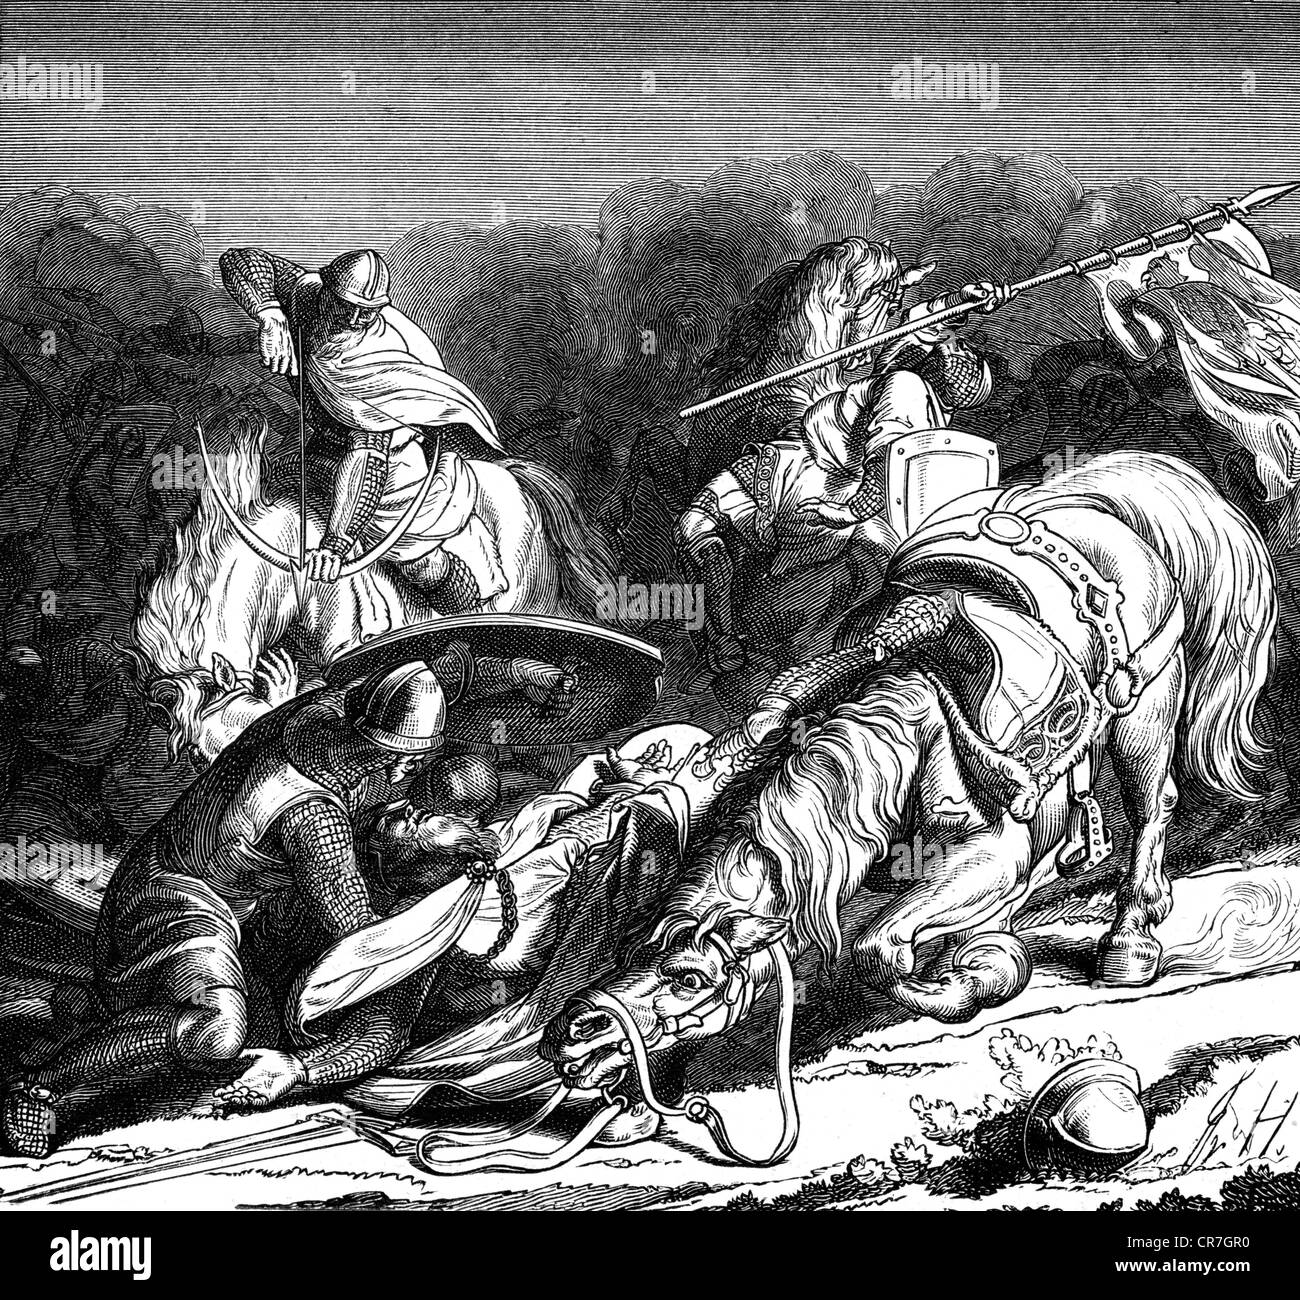 Frederick I 'Barbarossa', vers 1122 - 10.6.1190, roi d'Allemagne, empereur romain Saint 1155 - 1190, scène, bataille de Legnano, 29.5.1176, Frederick est jeté de son cheval, gravure de bois après un dessin de Friedrich Hottenroth, 19ème siècle, Banque D'Images